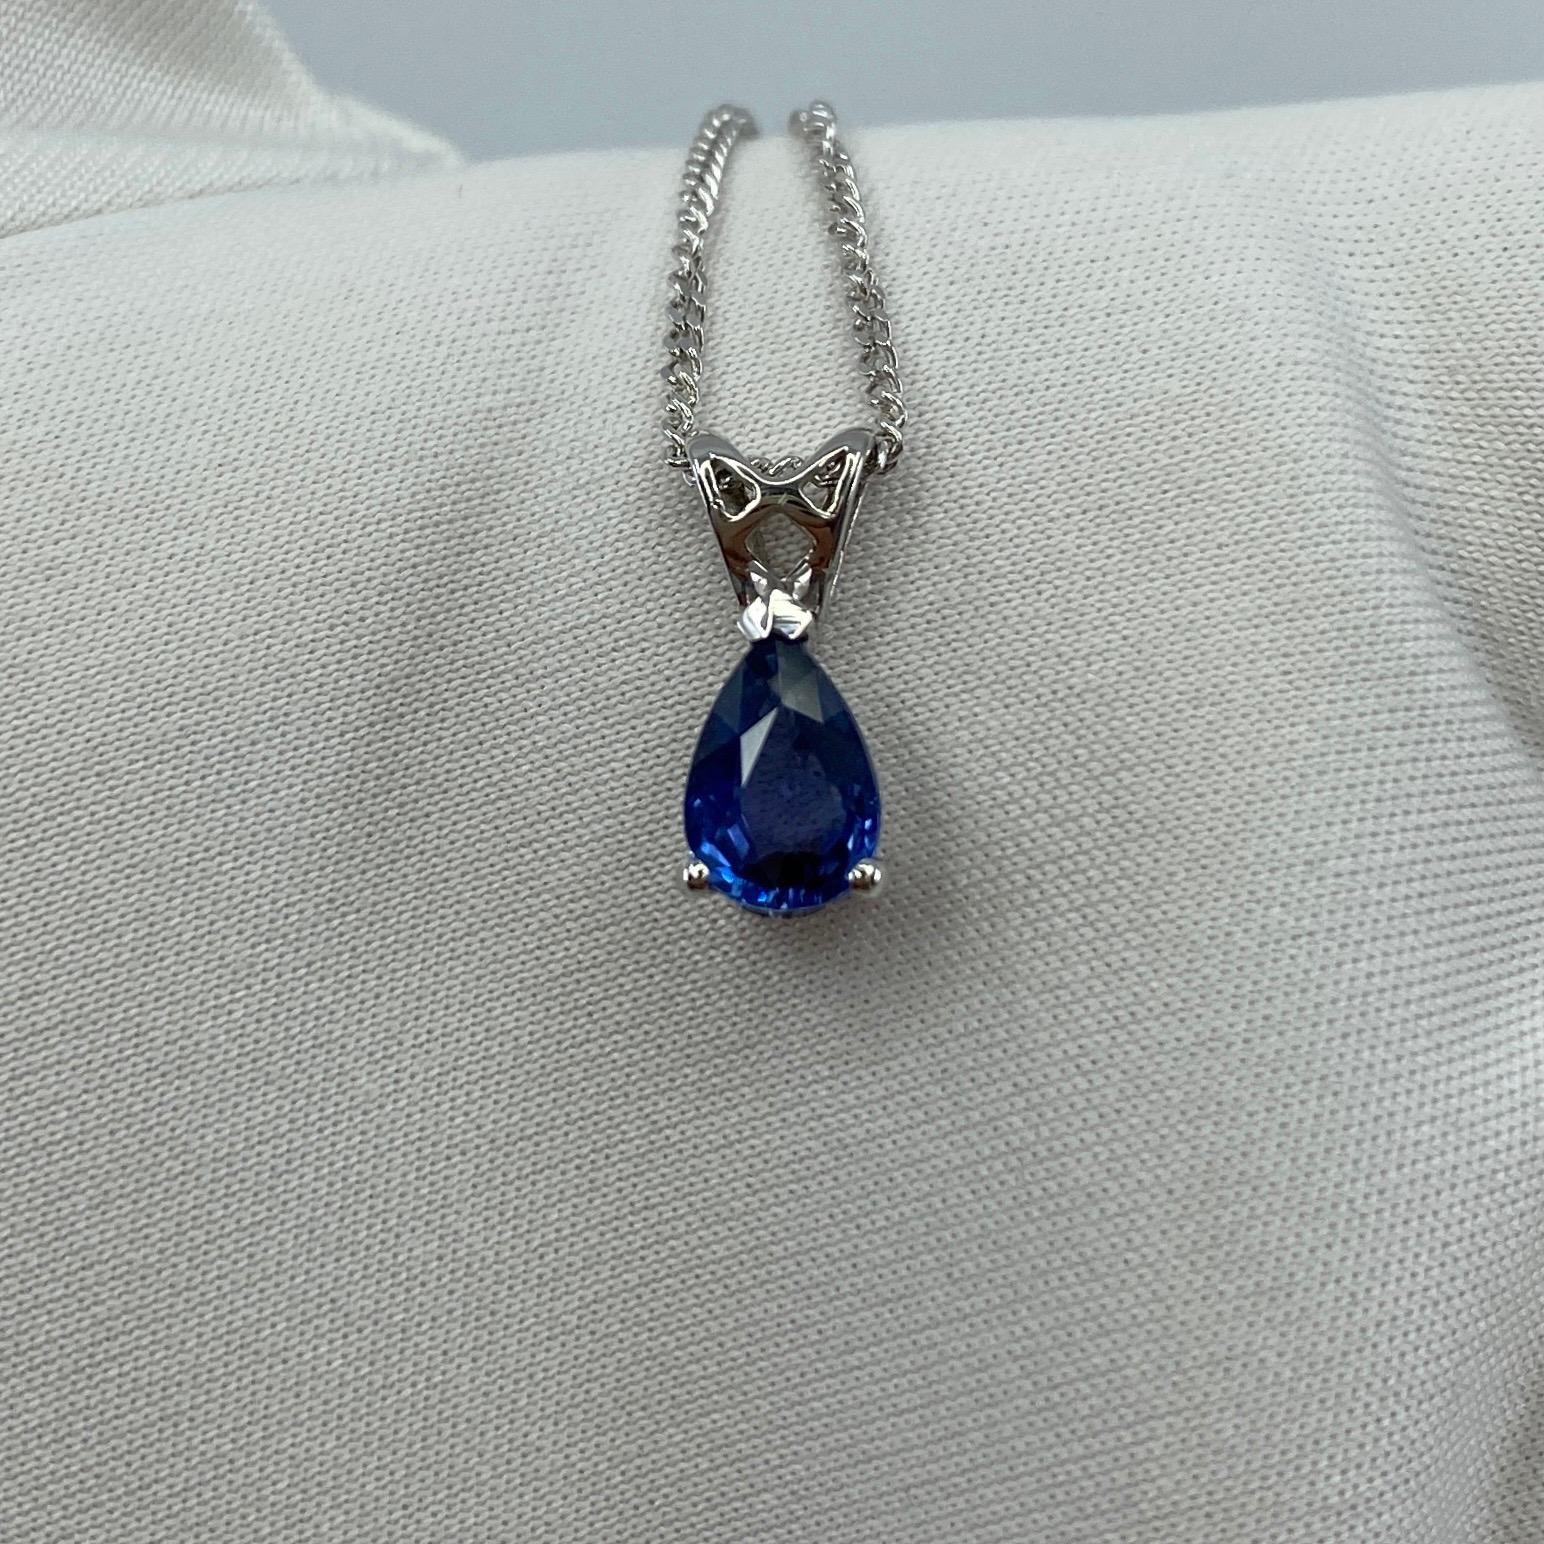 1.03ct Vivid Blue Ceylon Sapphire 18k White Gold Pear Cut Heart Pendant Necklace 3